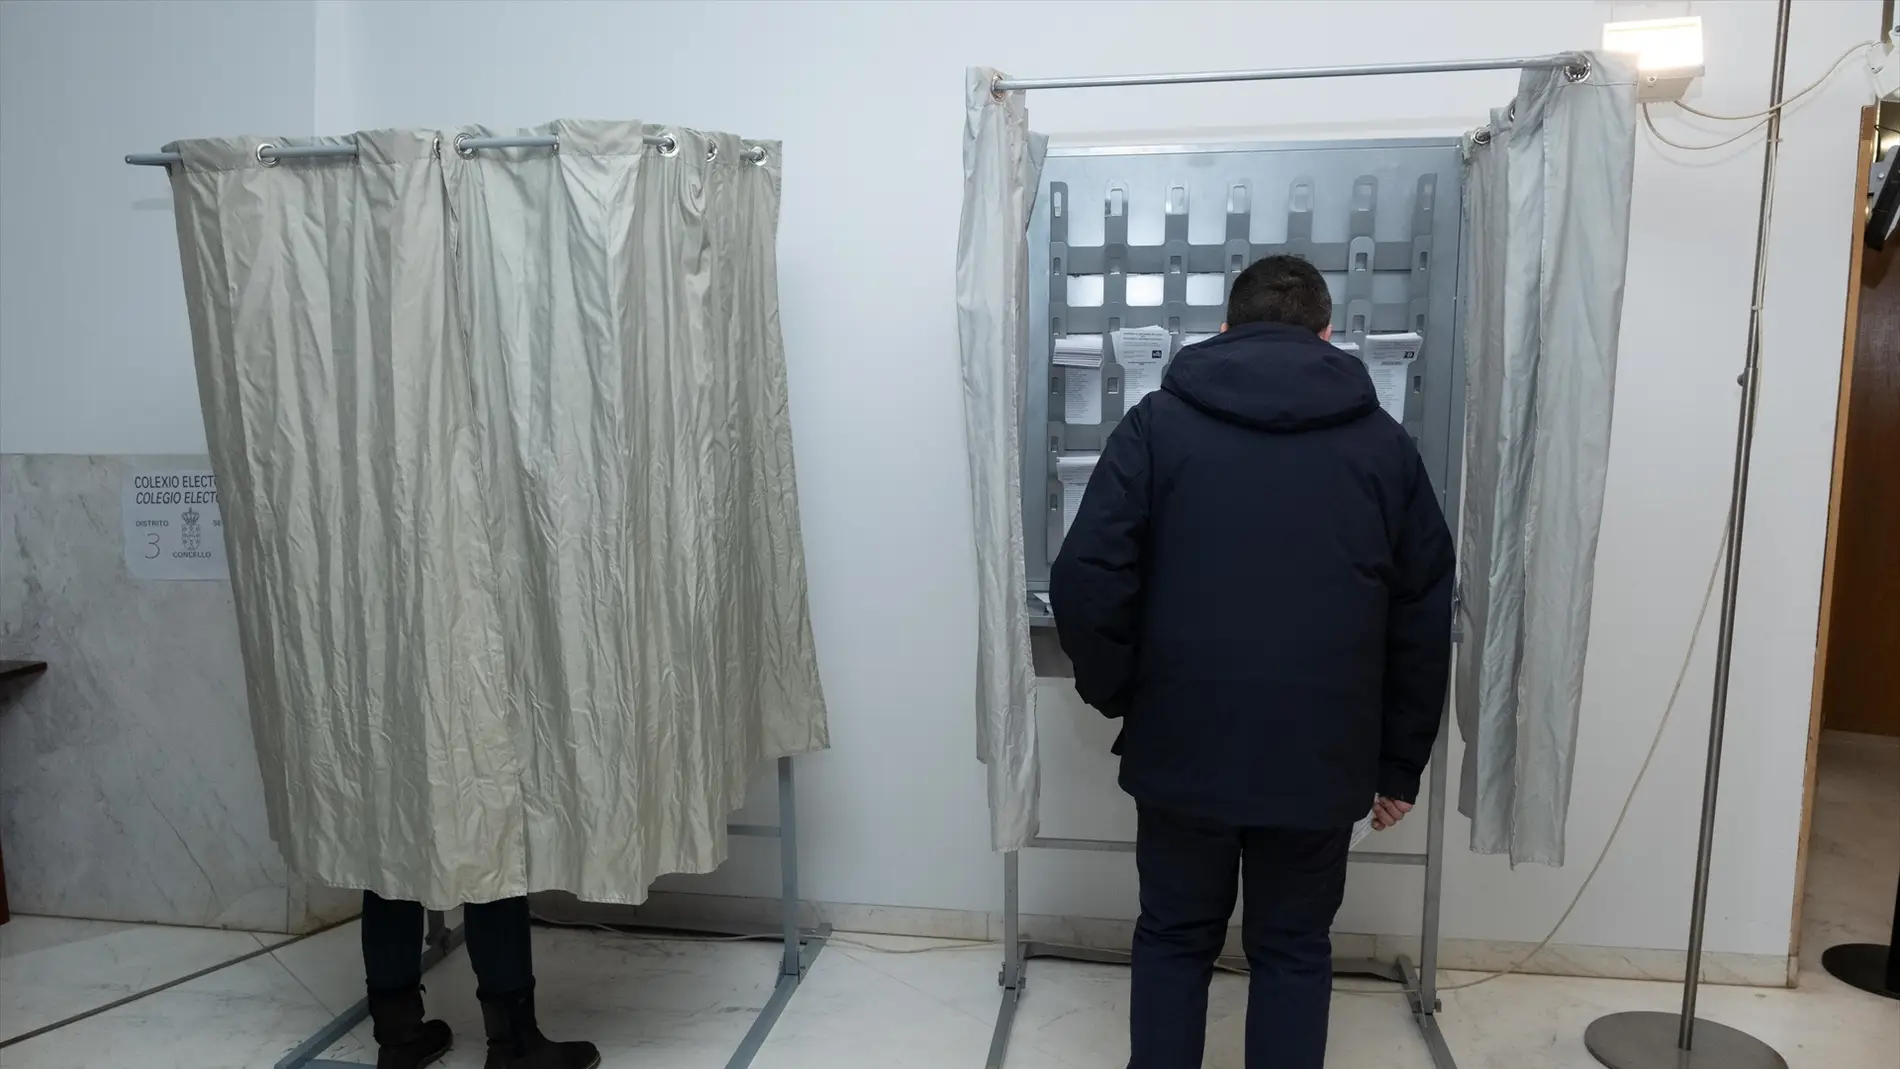 Imagen de ciudadanos eligiendo su voto en un colegio electoral en Galicia